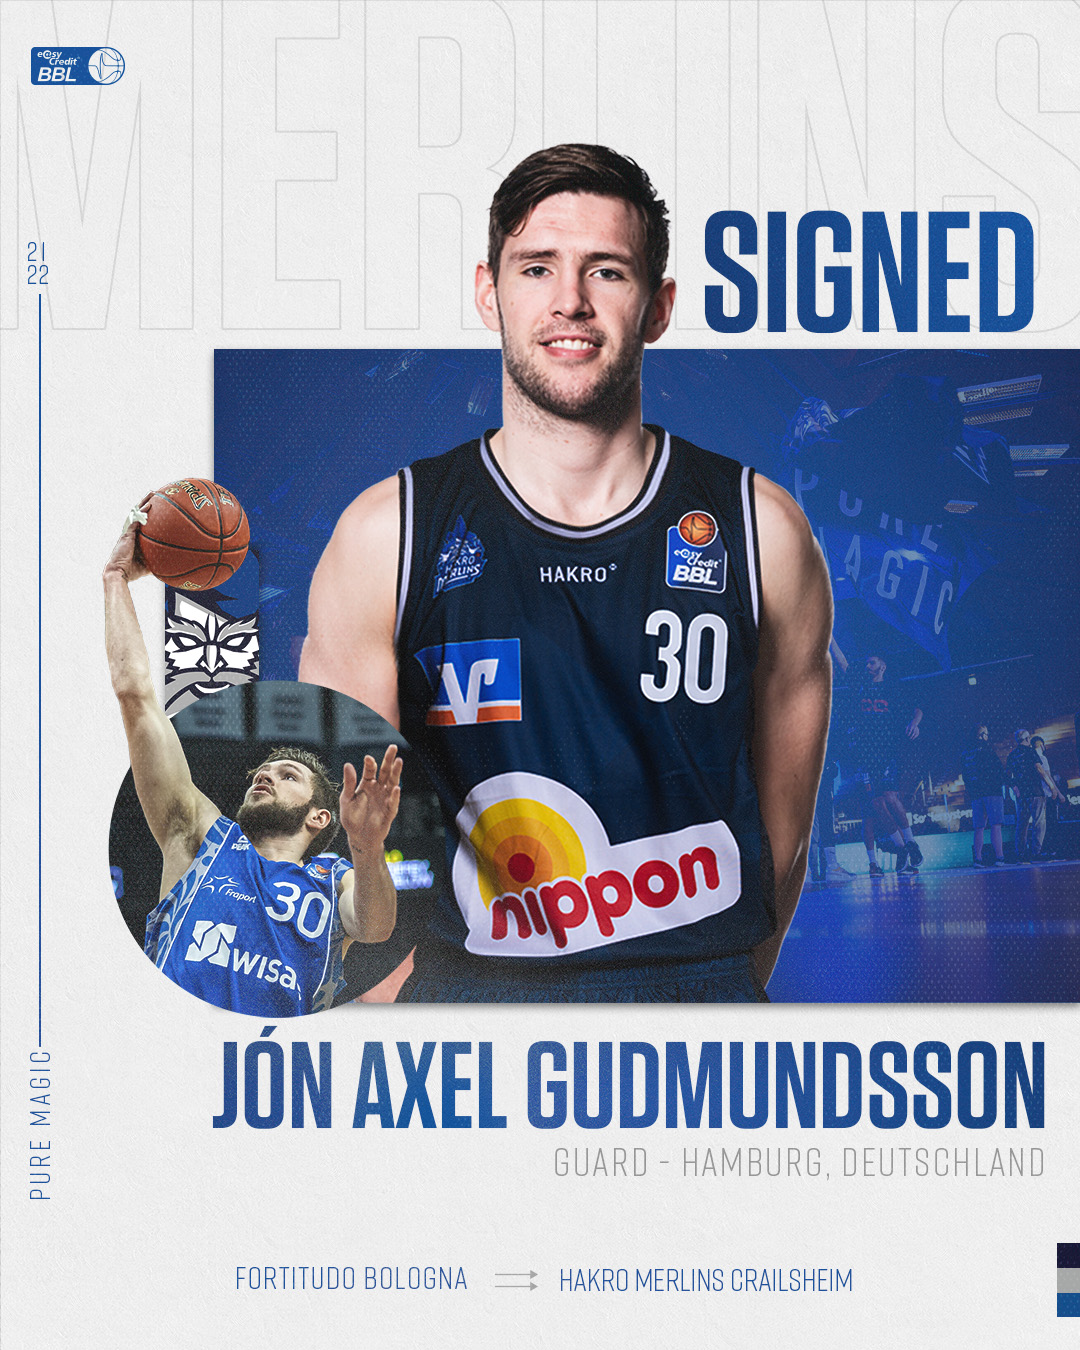 Gudmundsson signed post